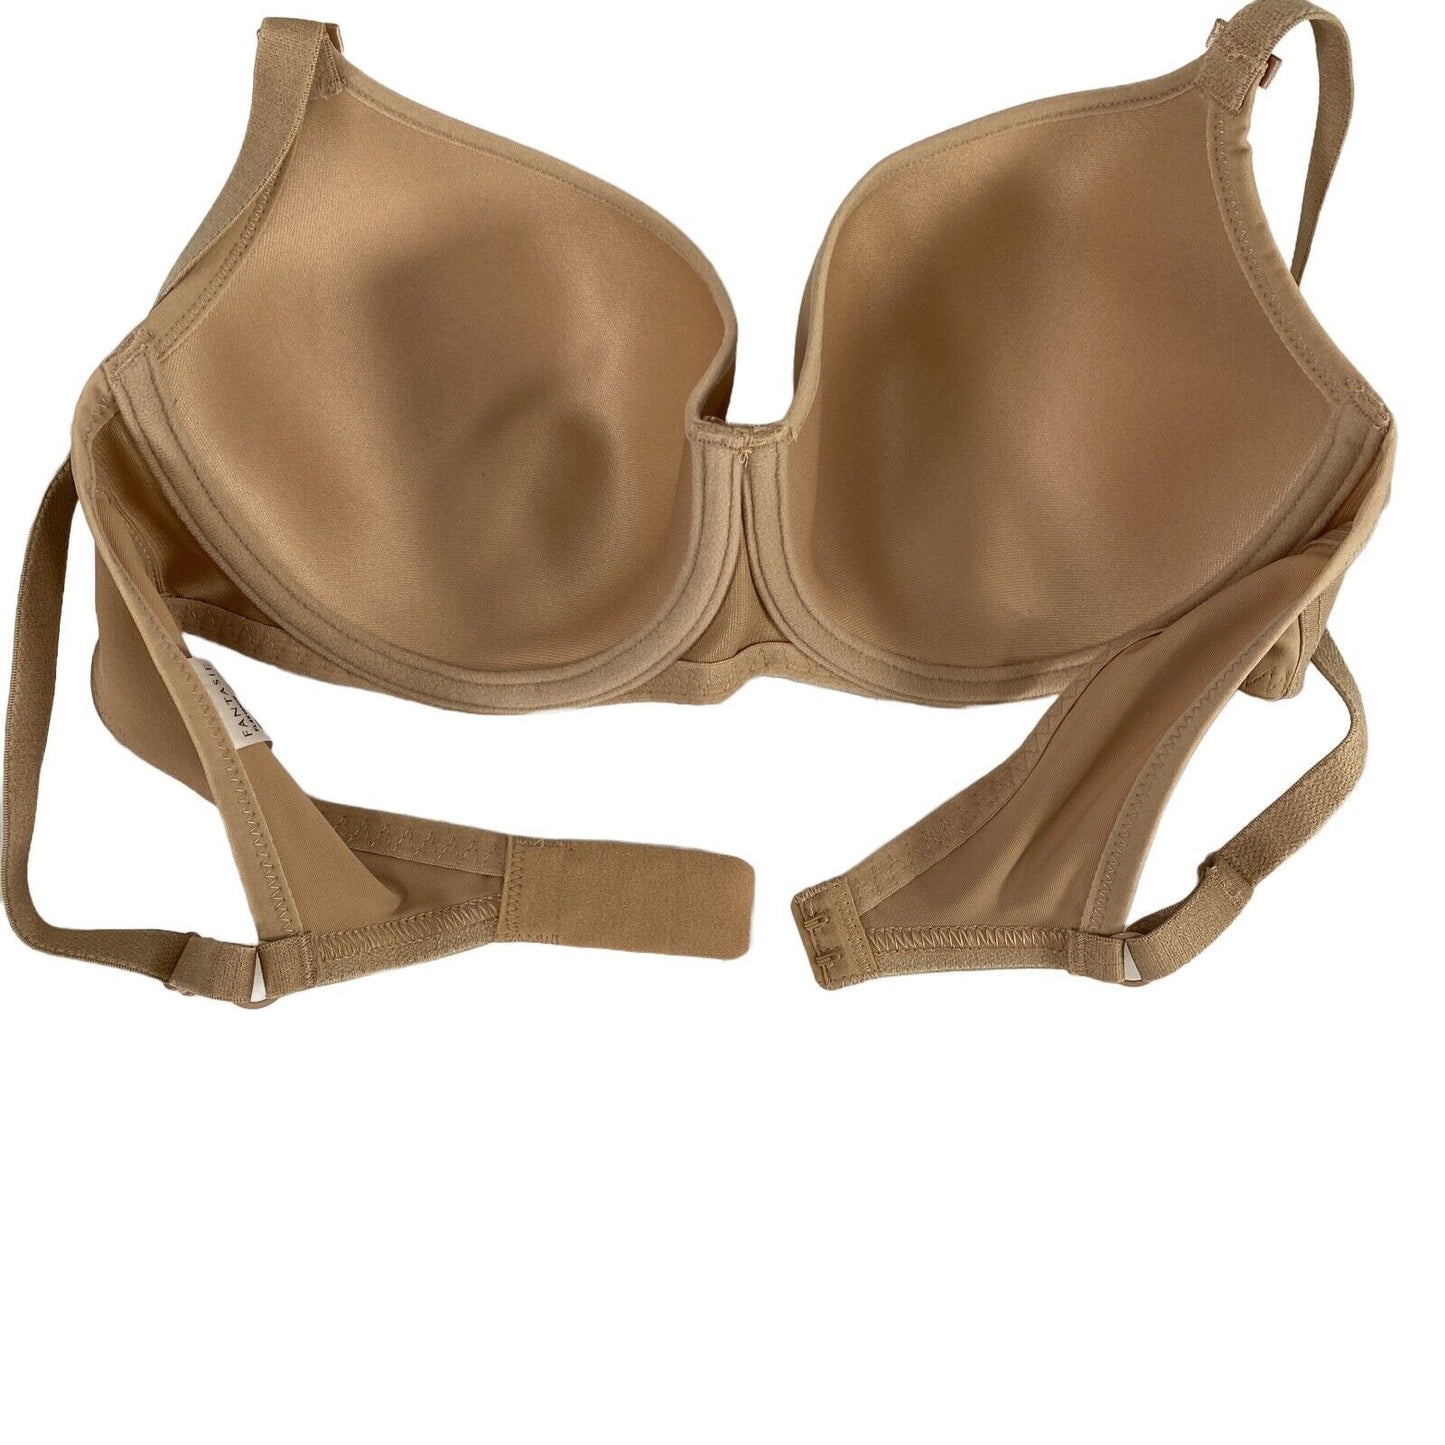 NUEVO sujetador tipo camiseta suavizante beige/nude Fantasie para mujer FL4510 - 34D